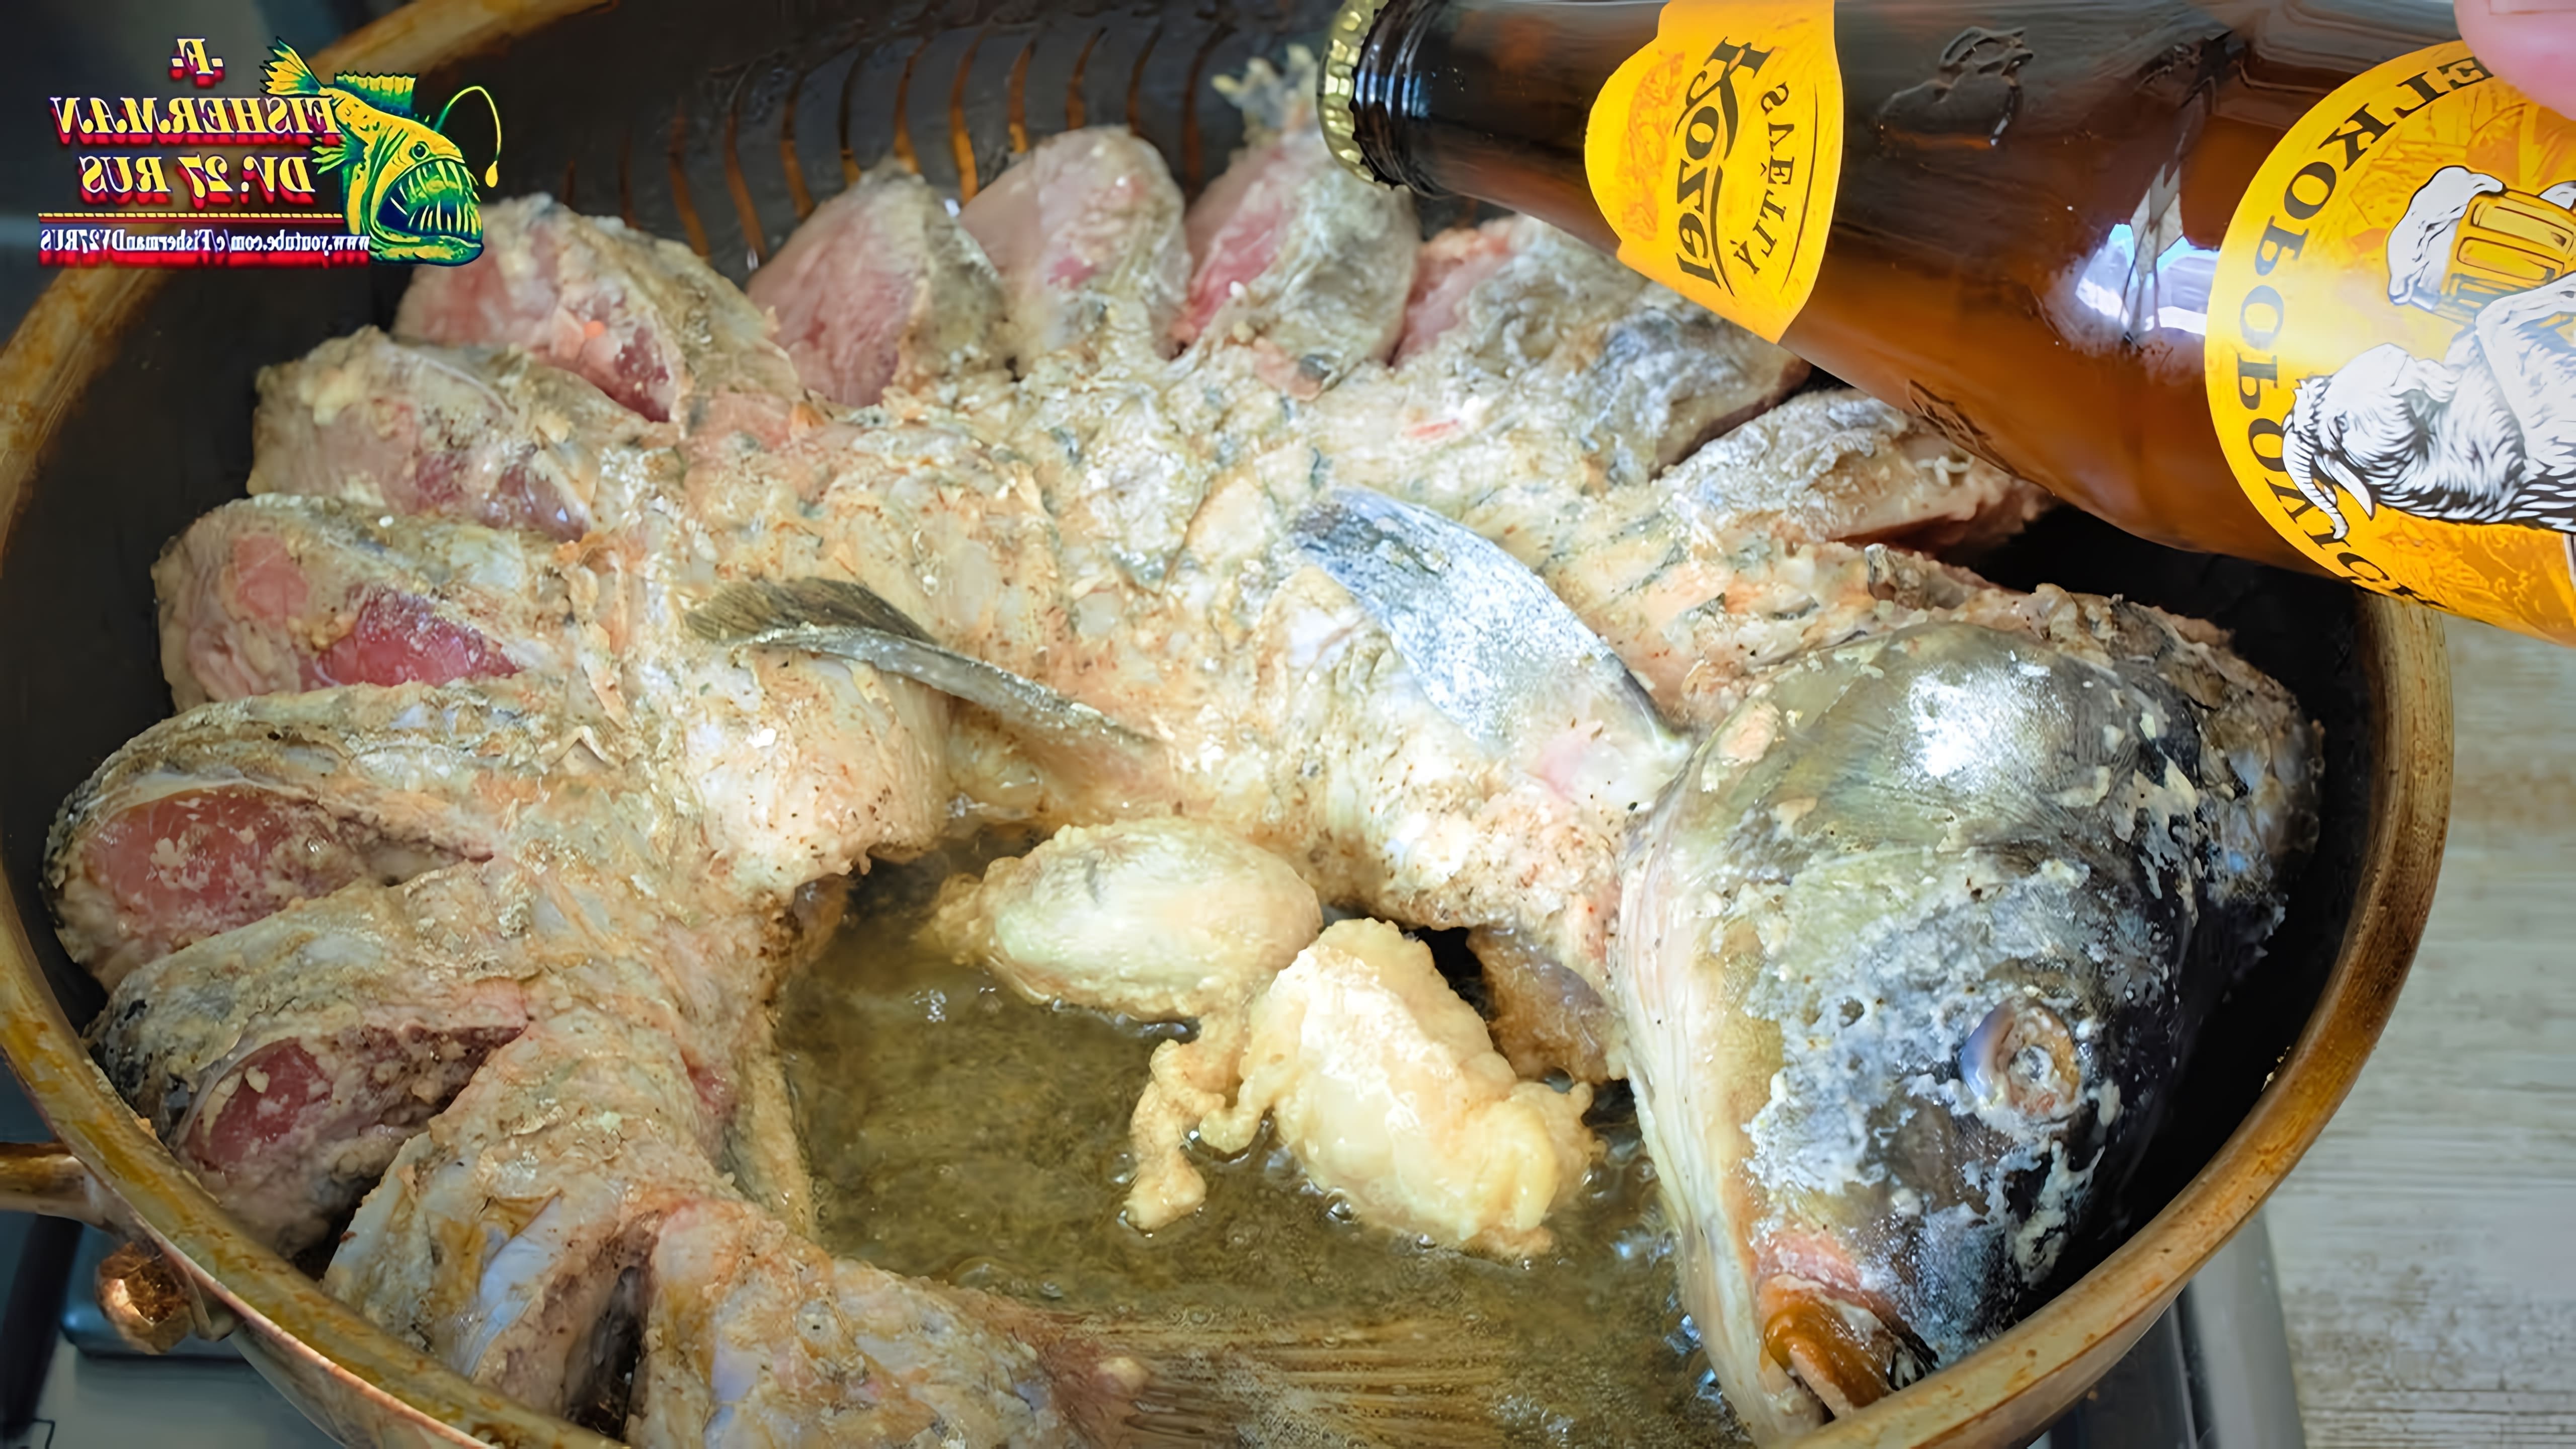 Не многие так готовят рыбу, карпа, сазана, а зря это очень вкусно, рыба жареная в сковороде! Попробуйте эту вкусно... 